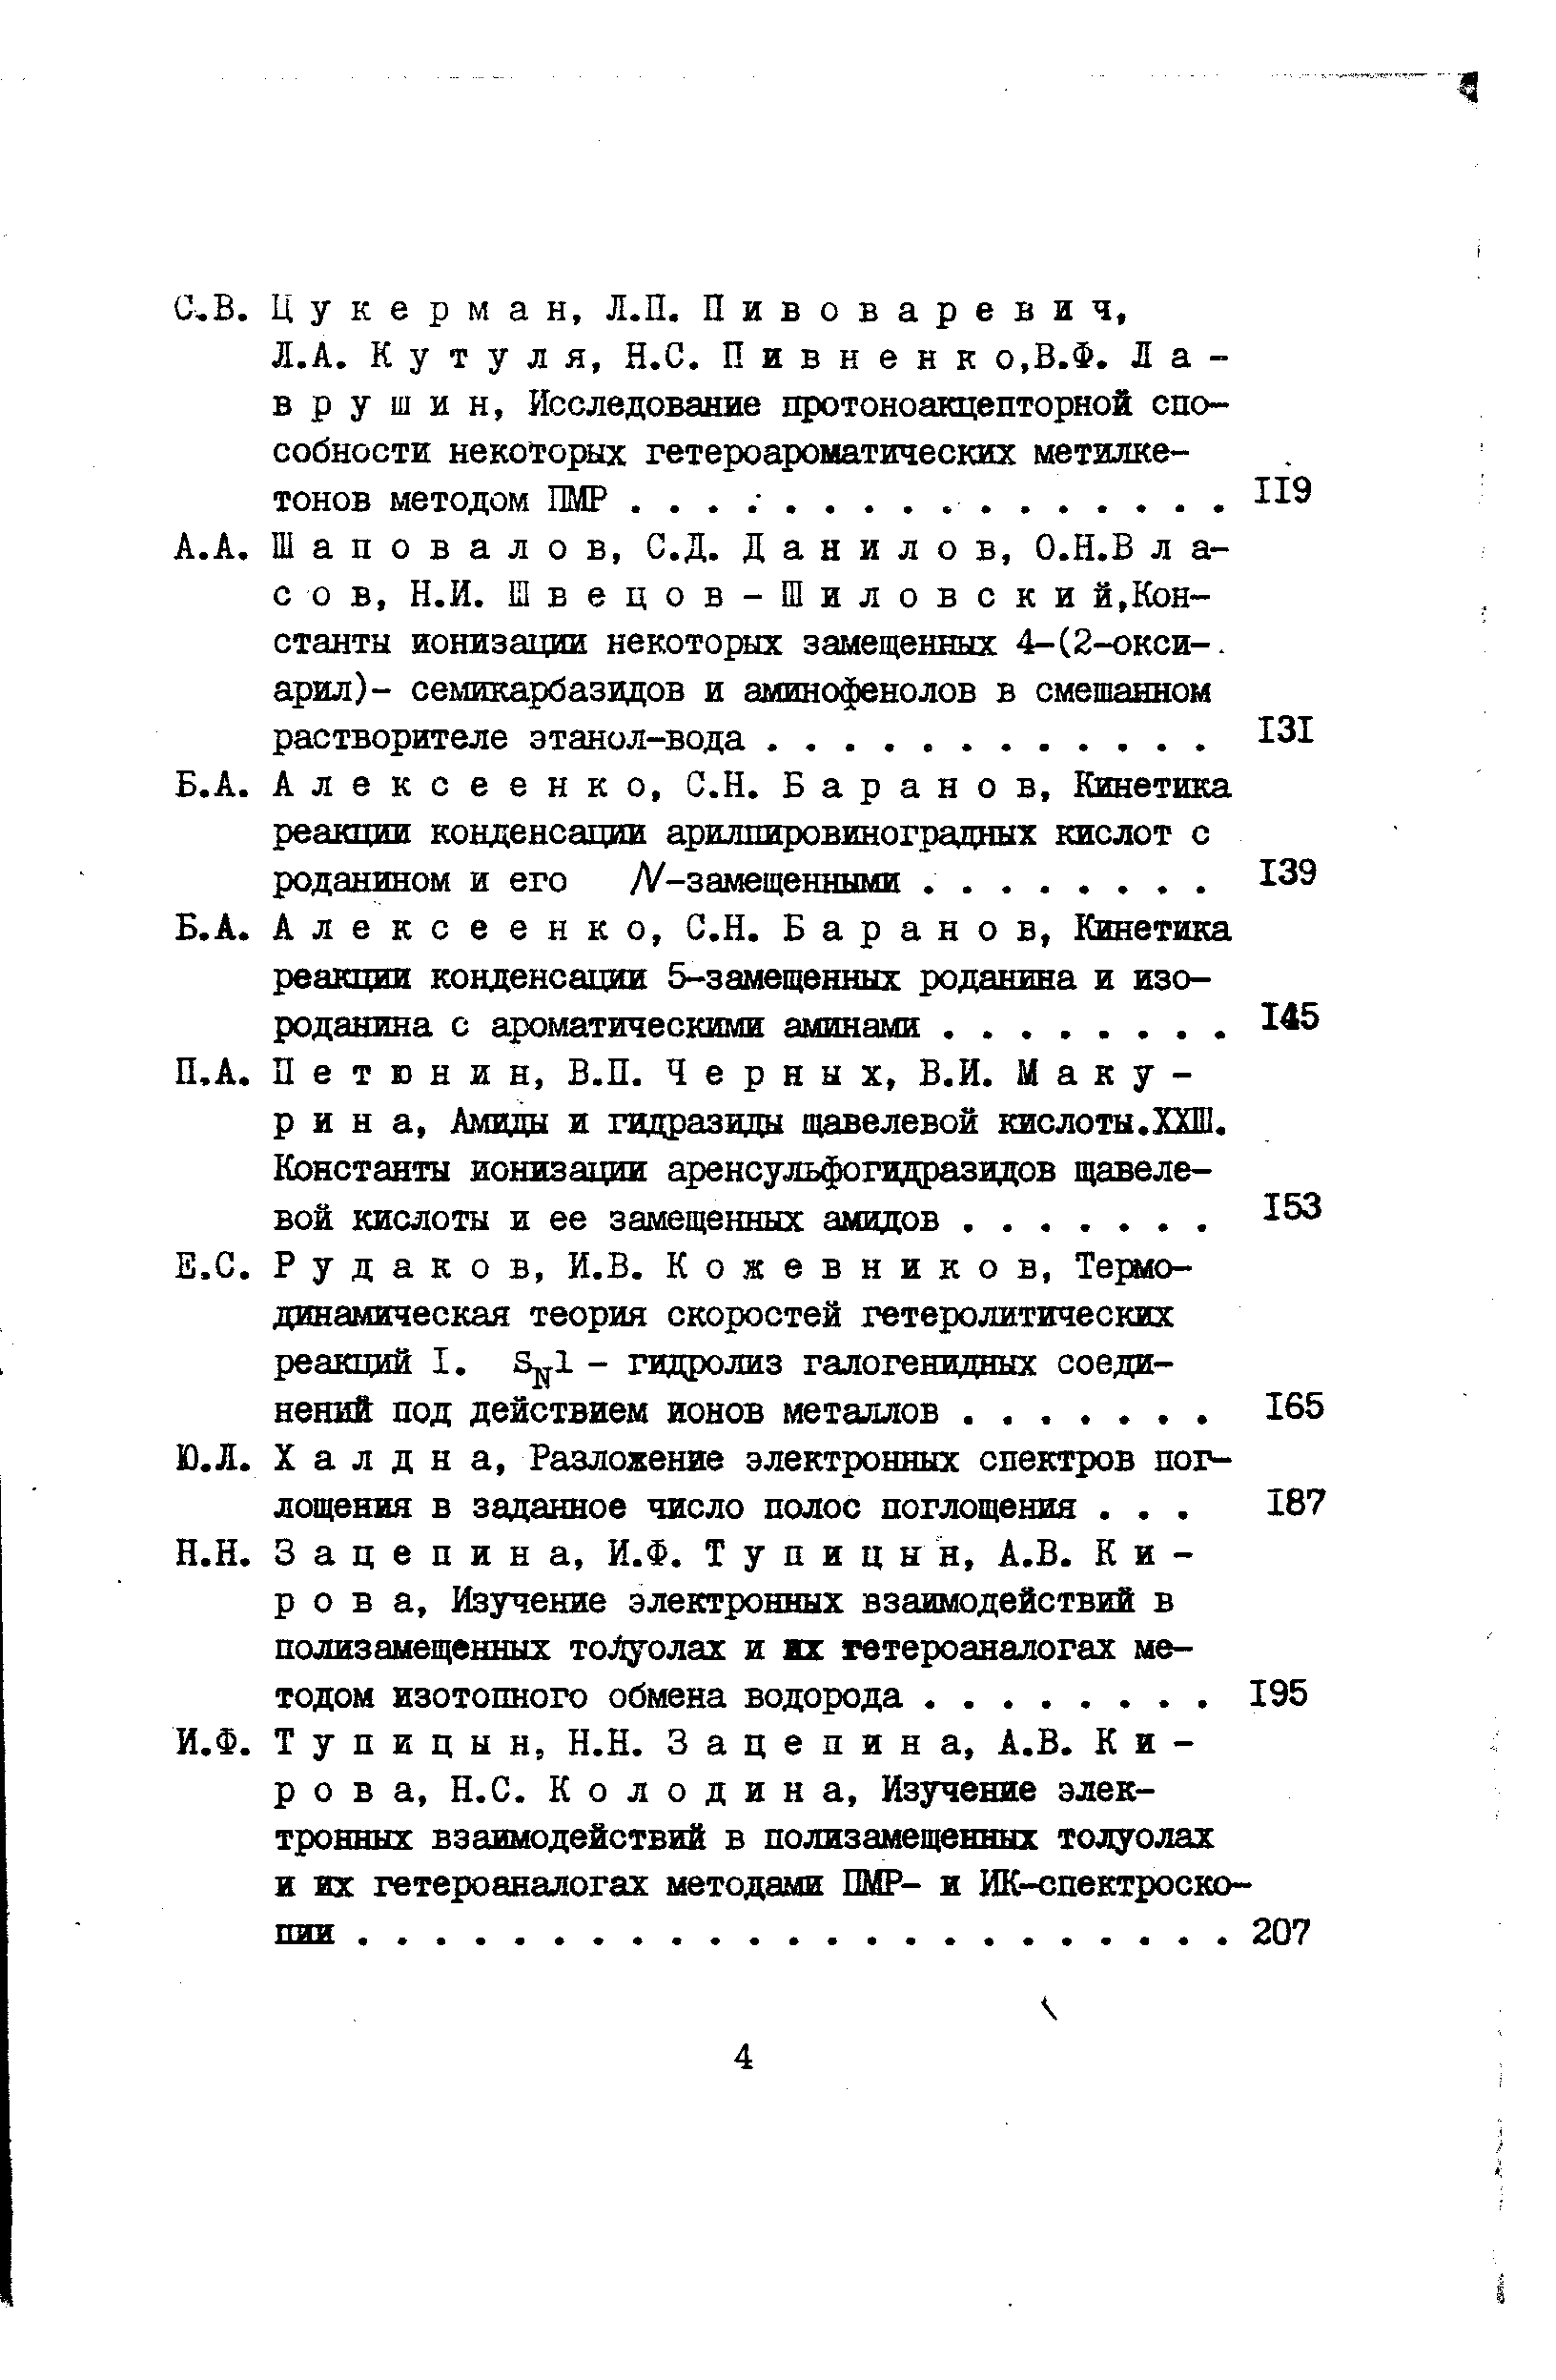 Алексеенко, С.Н. Баранов, Кинетика реакции конденсации 5-замещенных роданина и изороданина с ароматическими аминами.